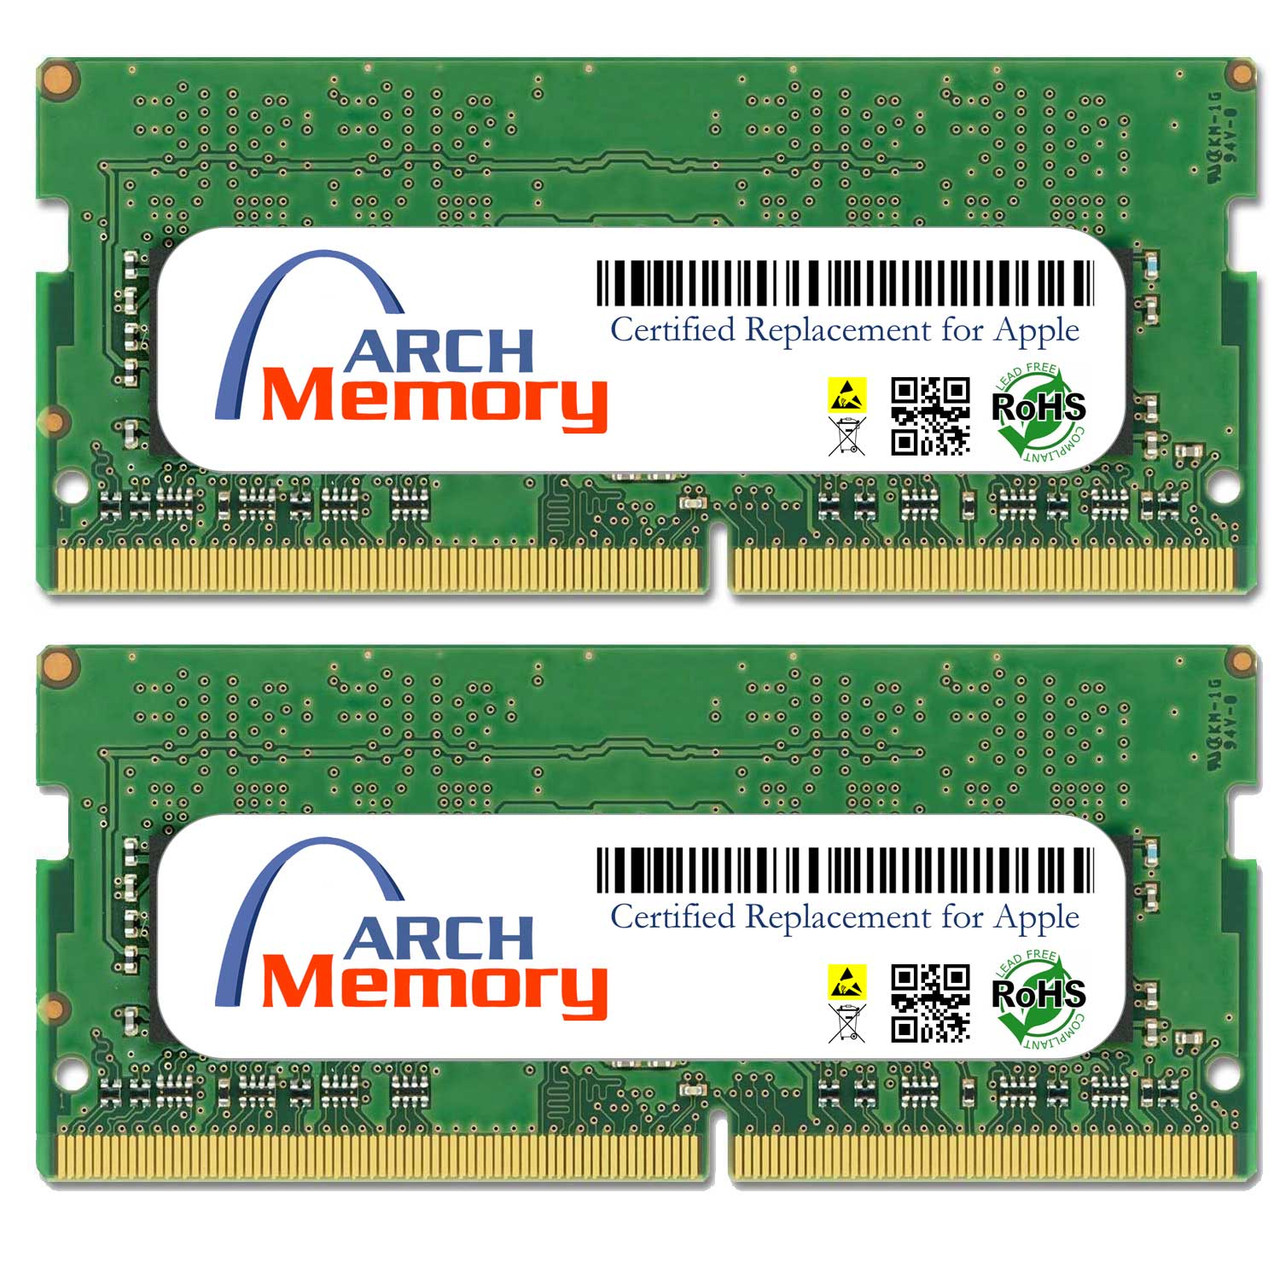 eBay*16GB Kit MUQN2G/A (2 x 8GB) 260-Pin DDR4 So-dimm RAM